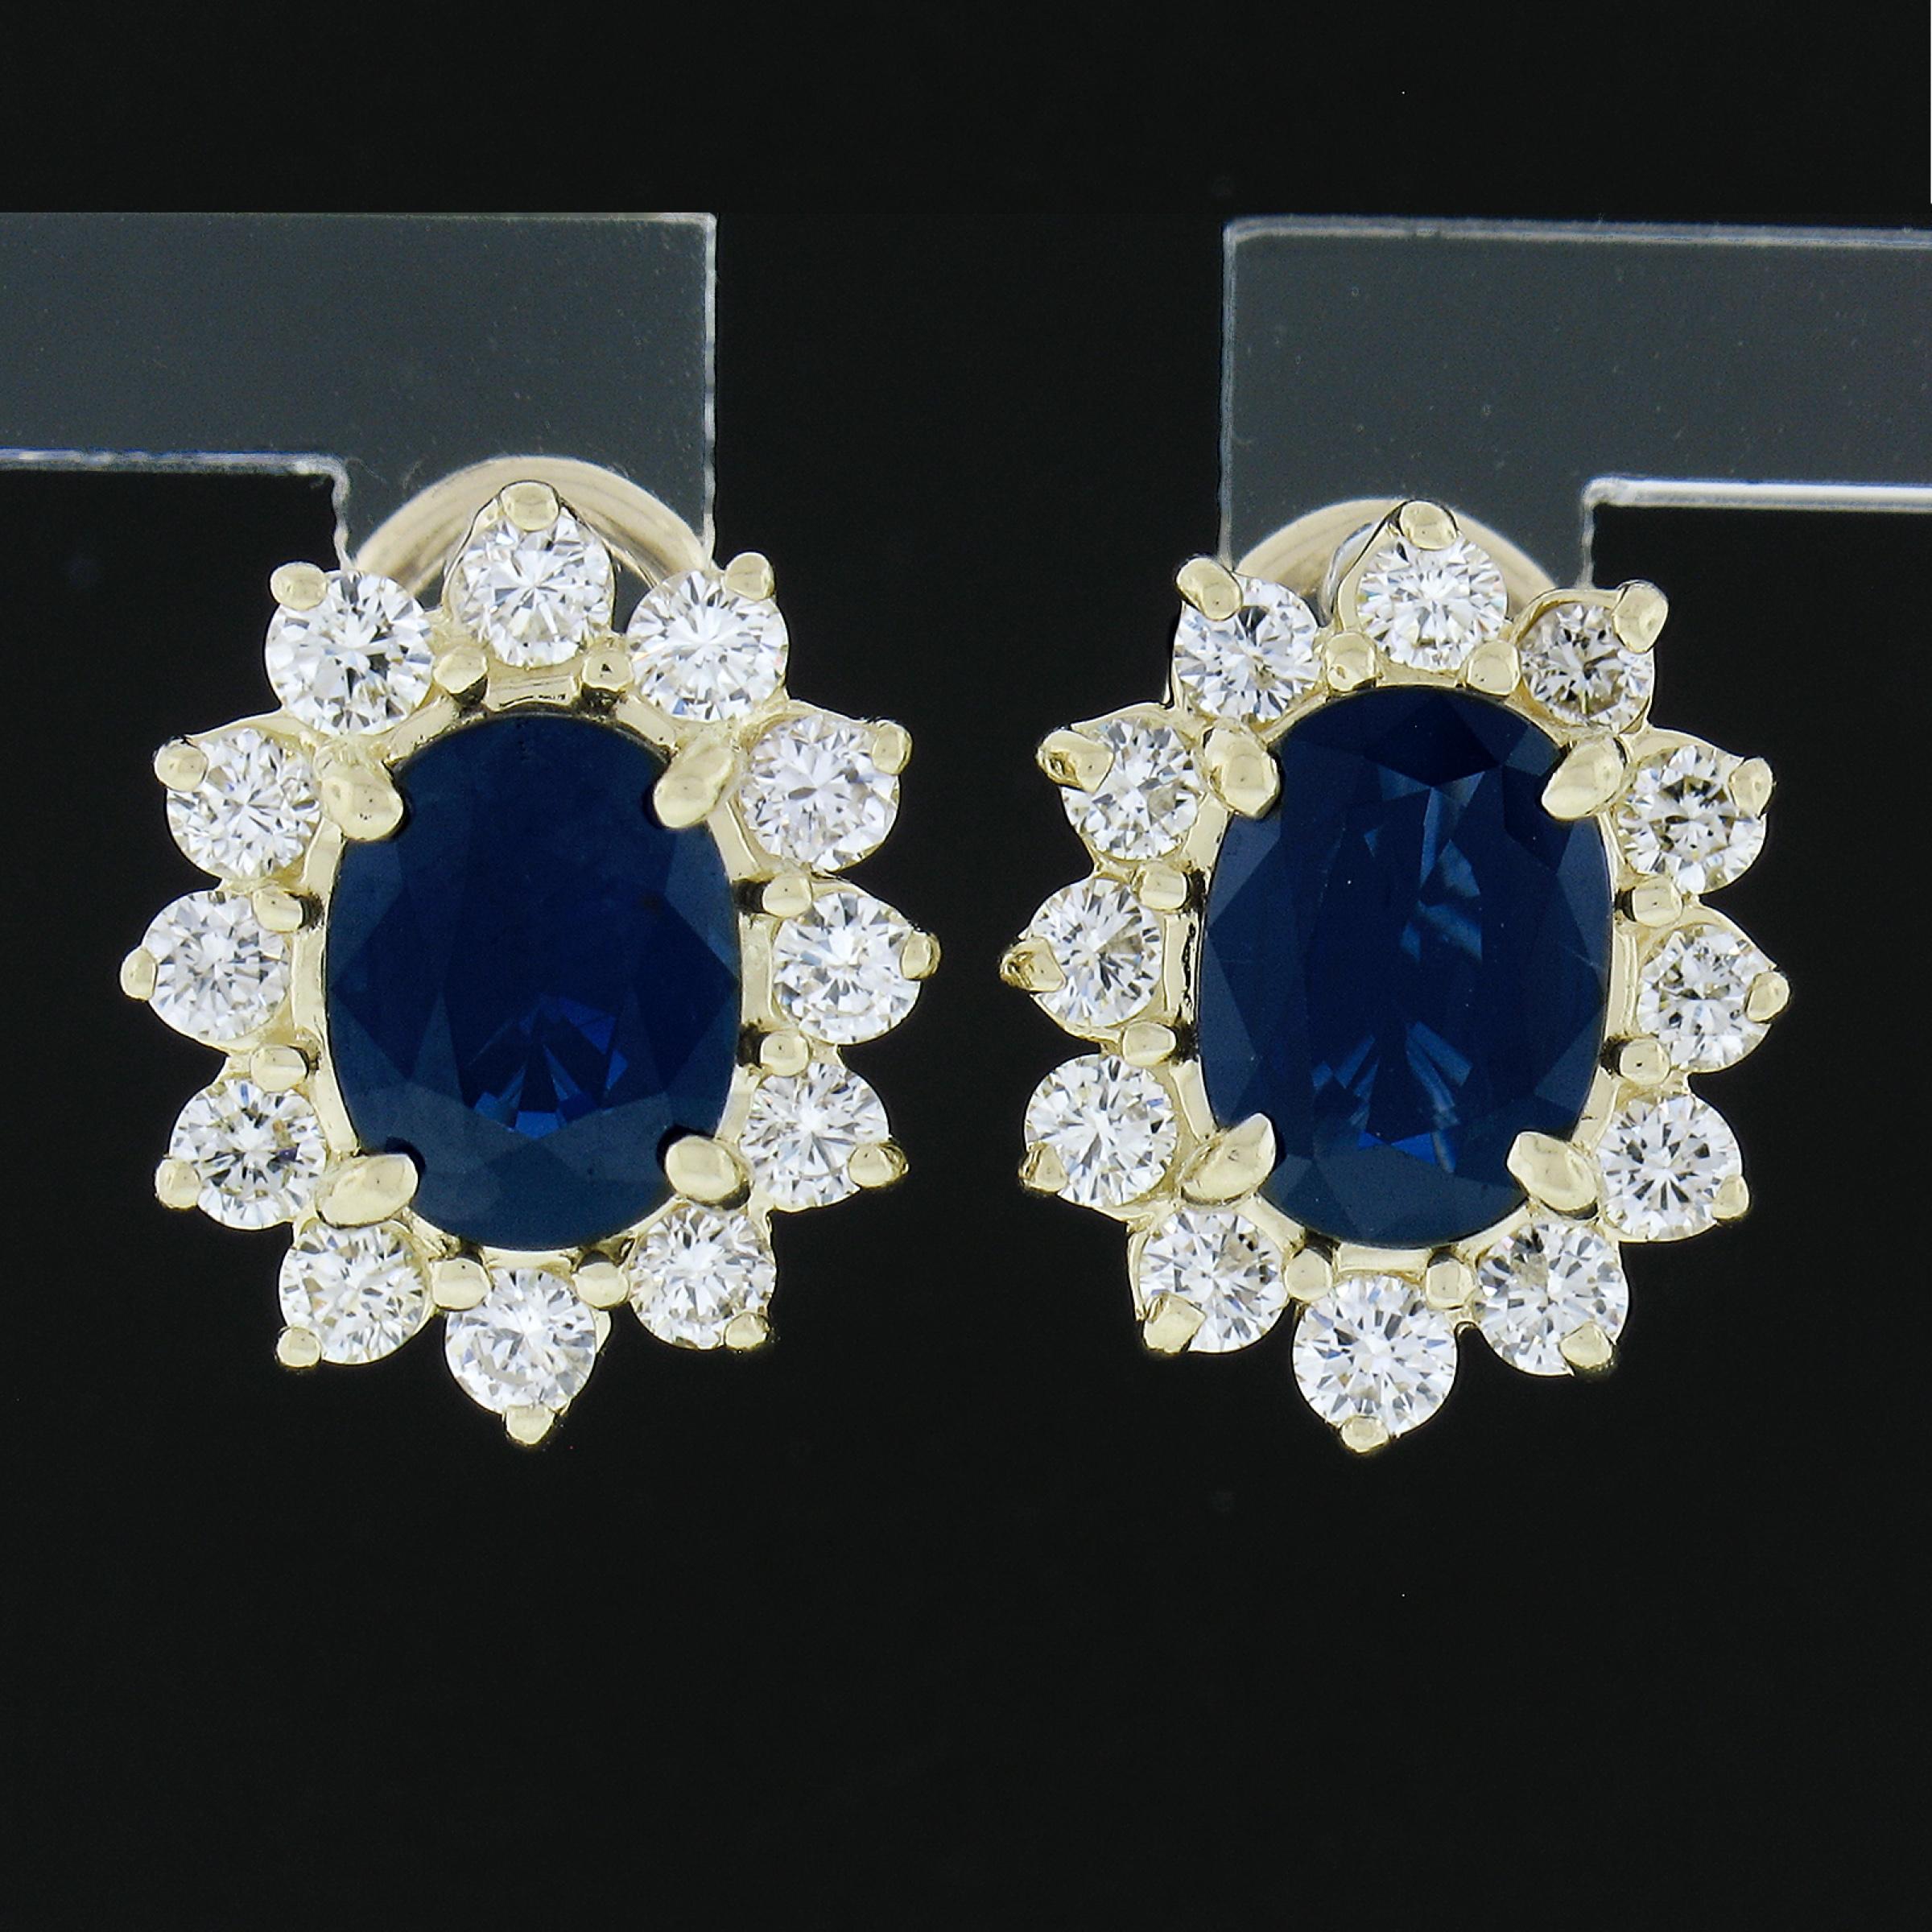 --Stone(s):--
(2) Natural Genuine Sapphires - Oval Brilliant Cut - Prong Set - Royal Blue Color - 8.3 - 8.6 x 6.3mm 3.20ctw (approx.)
(24) Natural Genuine Diamonds - Round Brilliant Cut - Prong Set - J/K Color - VS2-SI2 Clarity - 1.20ctw